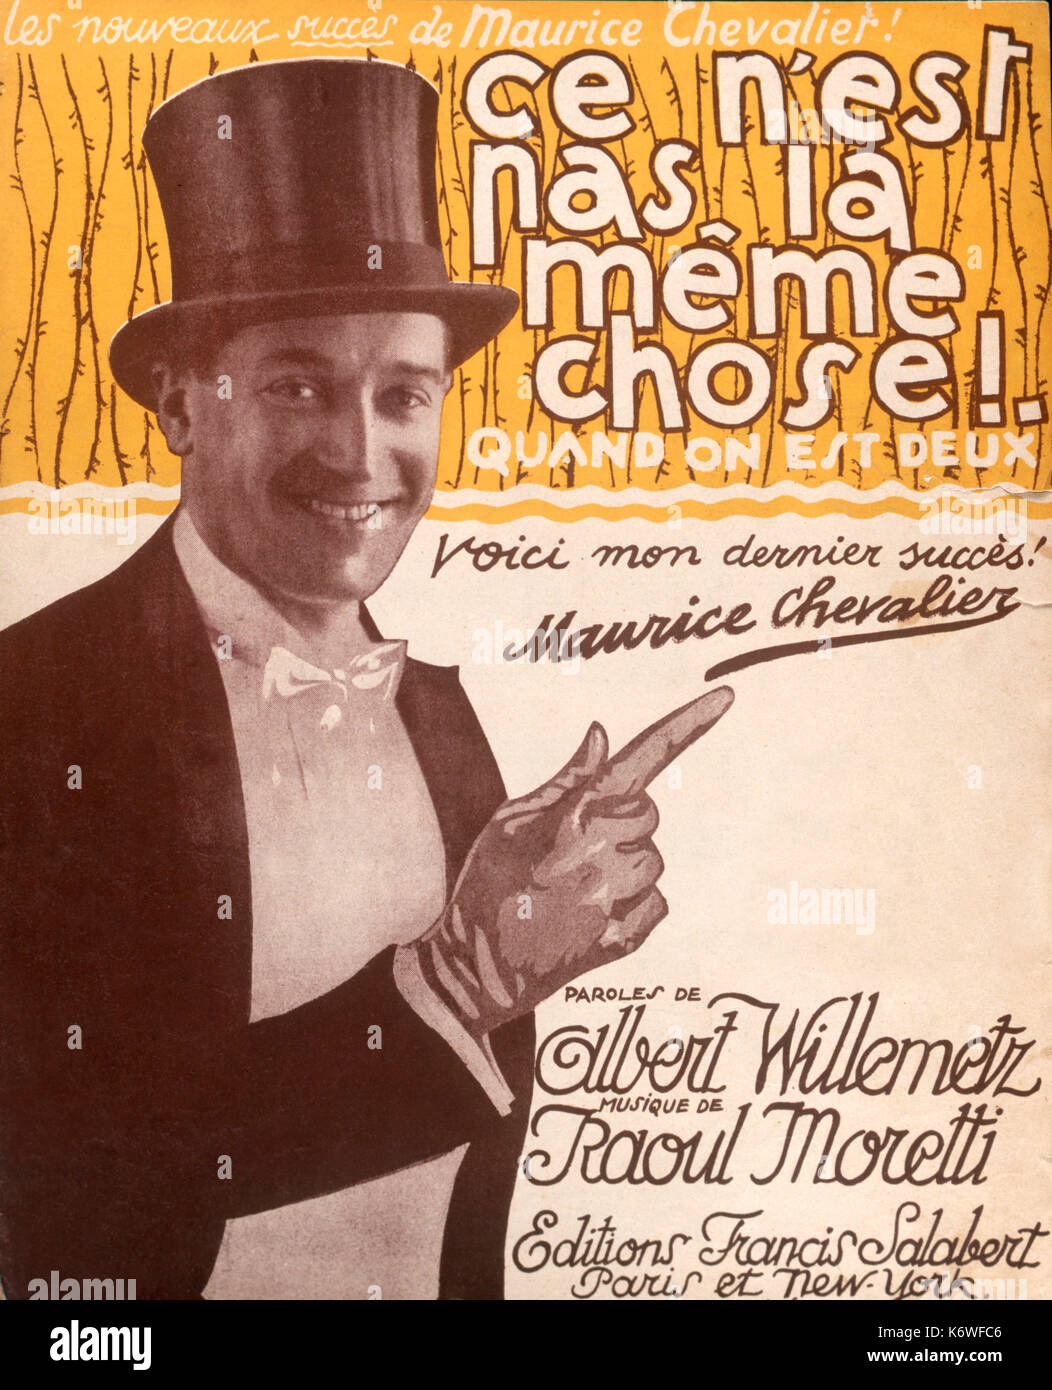 CHEVALIER, Maurice-ce n'est pas la Meme wählte Abdeckung von Score, mit Foto von Chevalier, 1924. Von Francis Salabert veröffentlicht. Französische Schauspieler, Sänger, Schauspieler, songwriter, 1888-1972 Stockfoto